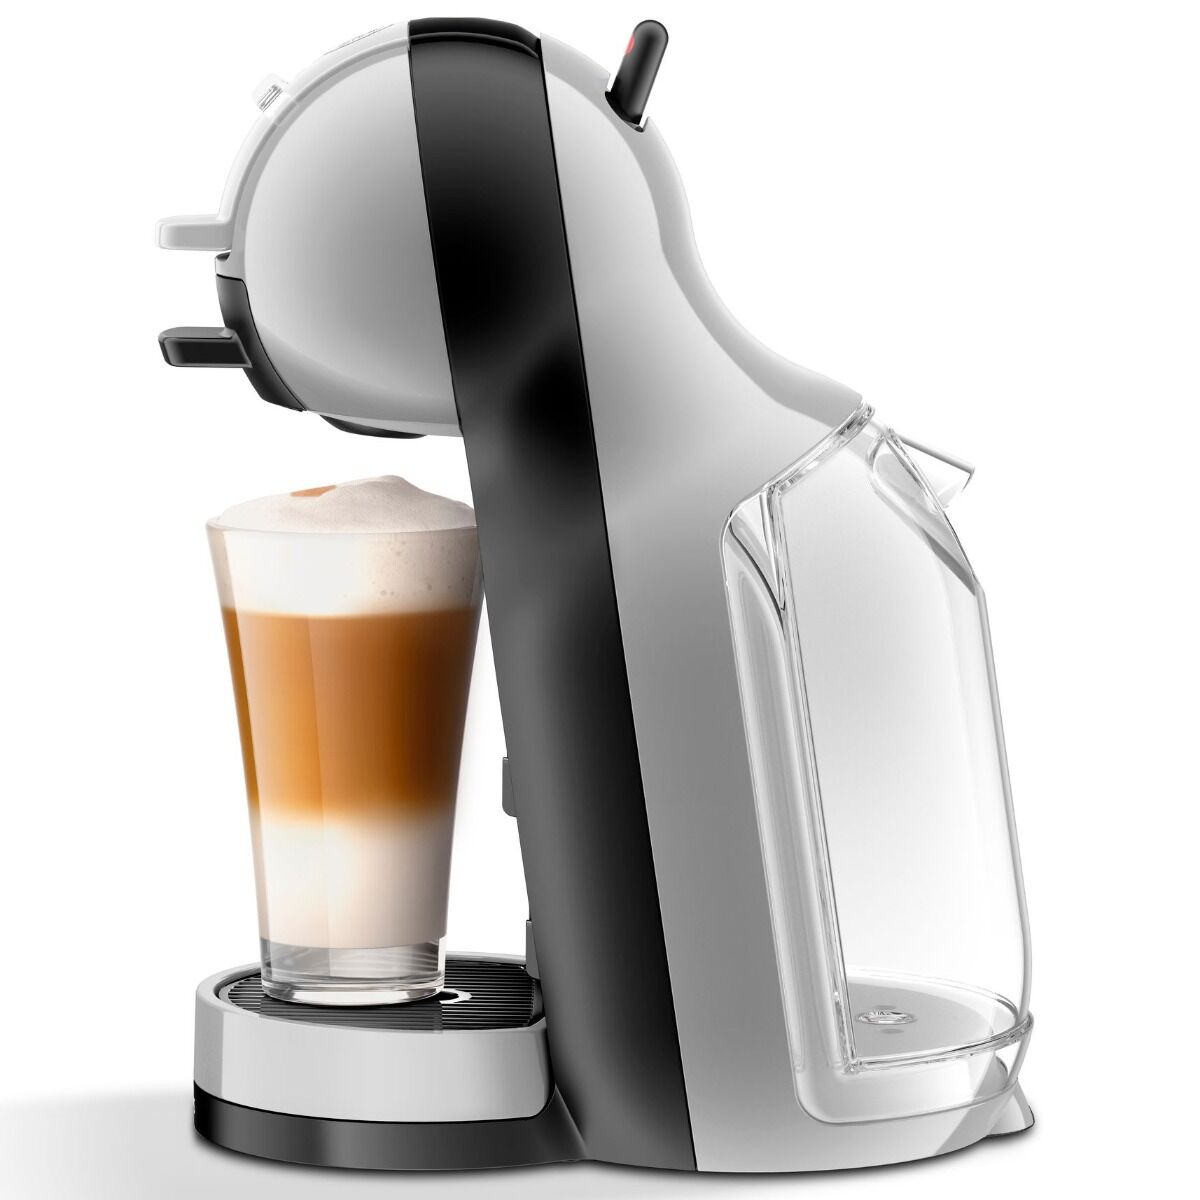 Espressor Krups Nescafe Dolce Gusto Mini-Me, 1500 W, 0.8 l, 15 bari, Negru/Argintiu